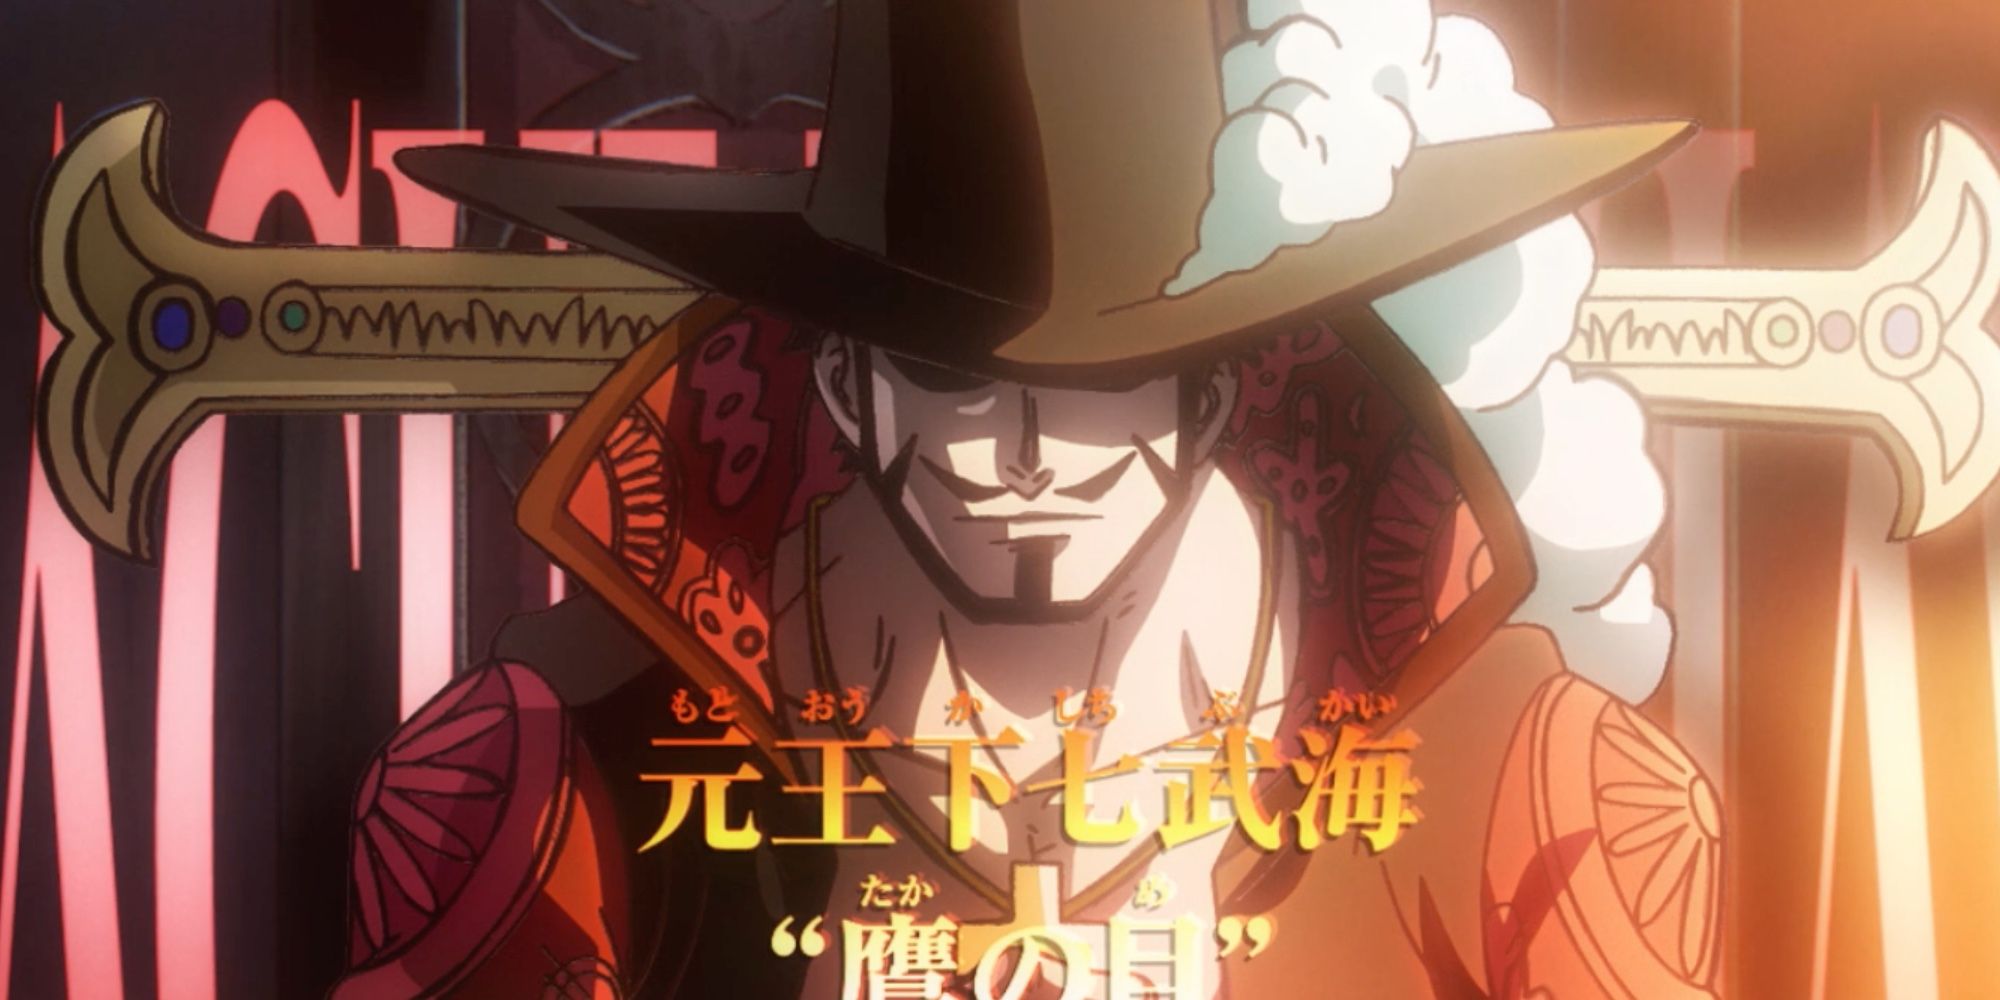 Best One Piece Episodes to Rewatch